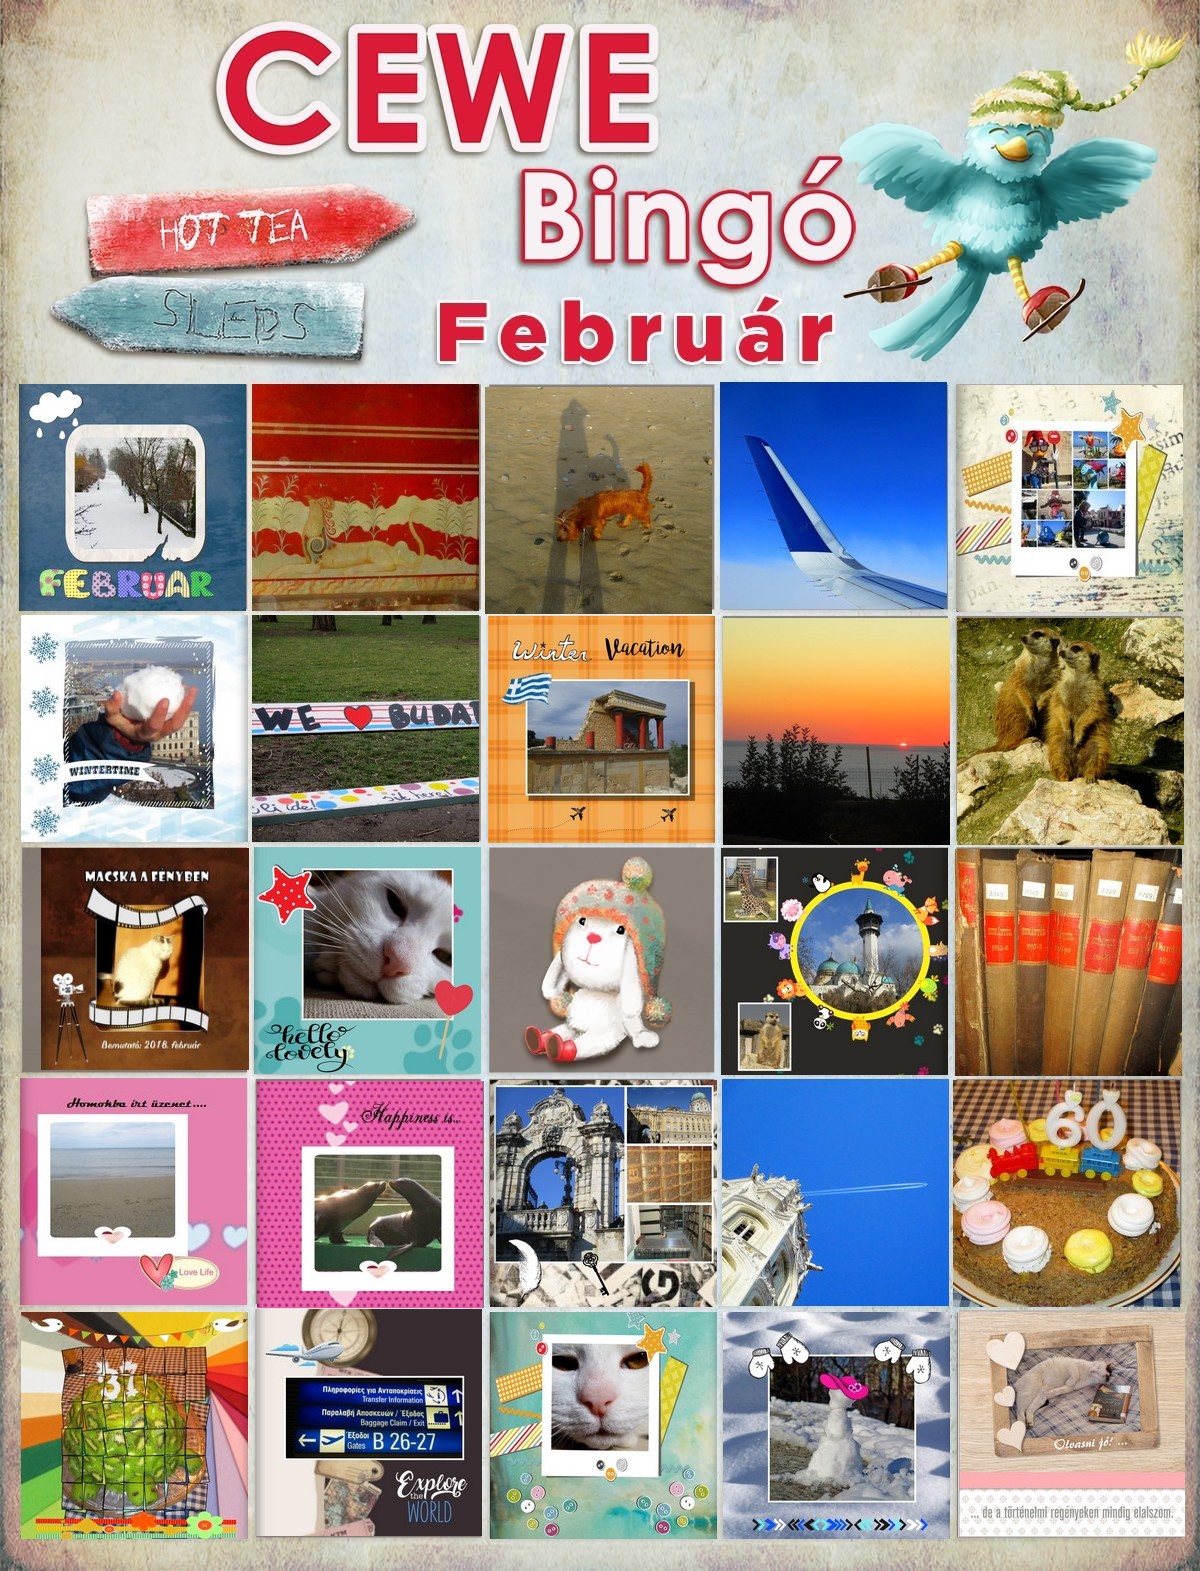 Bingo 2018. február